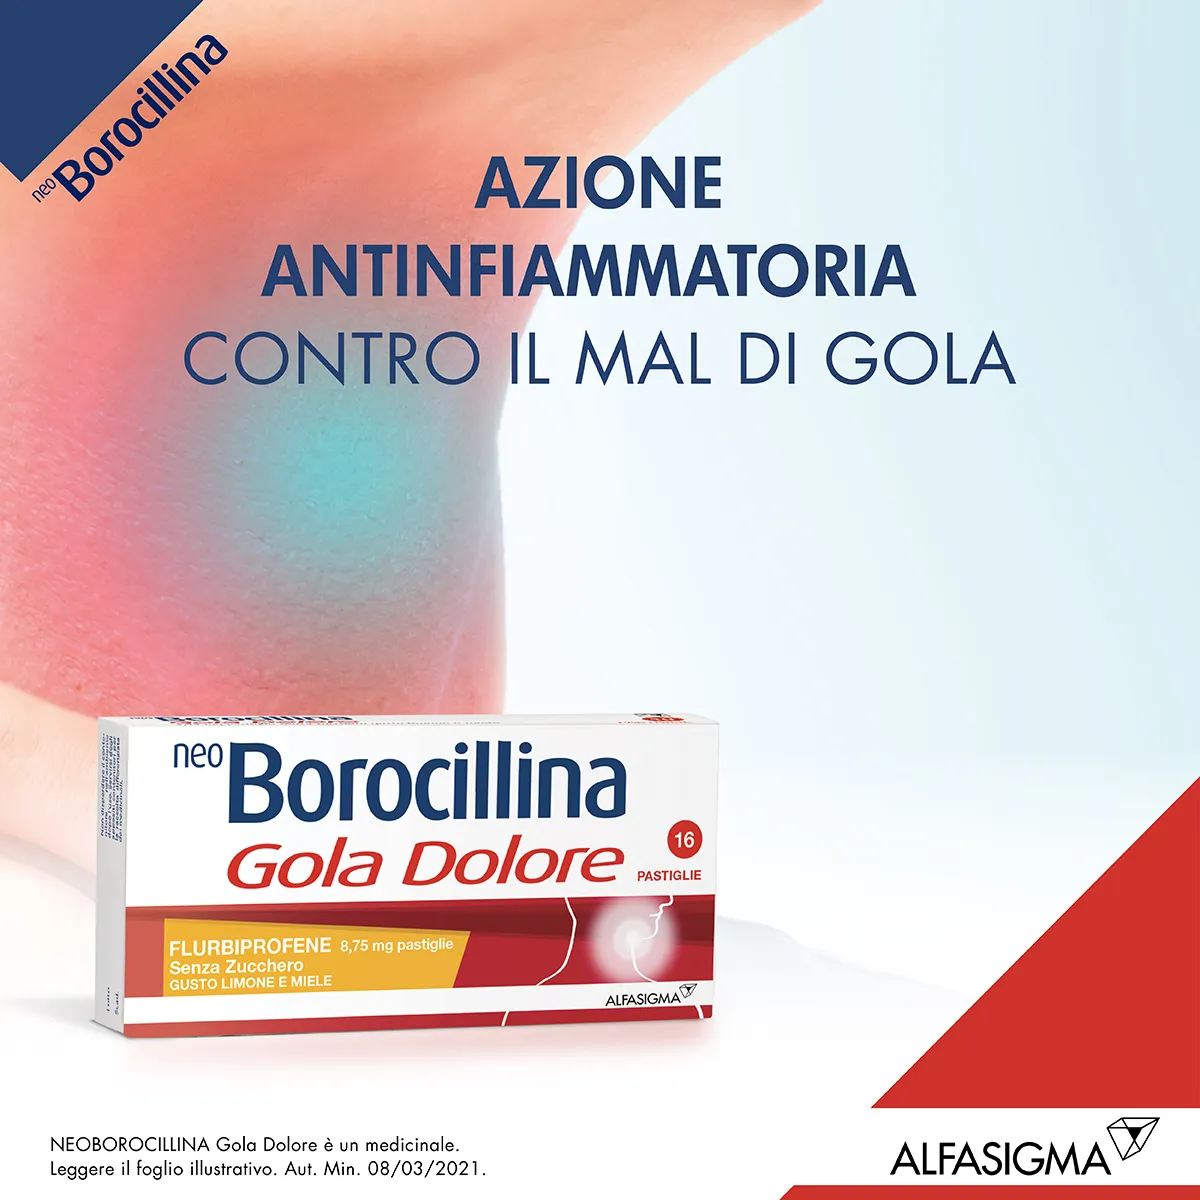 Neo Borocillina Gola Dolore 8,75 mg Limone e Miele 16 Pastiglie Senza Zucchero